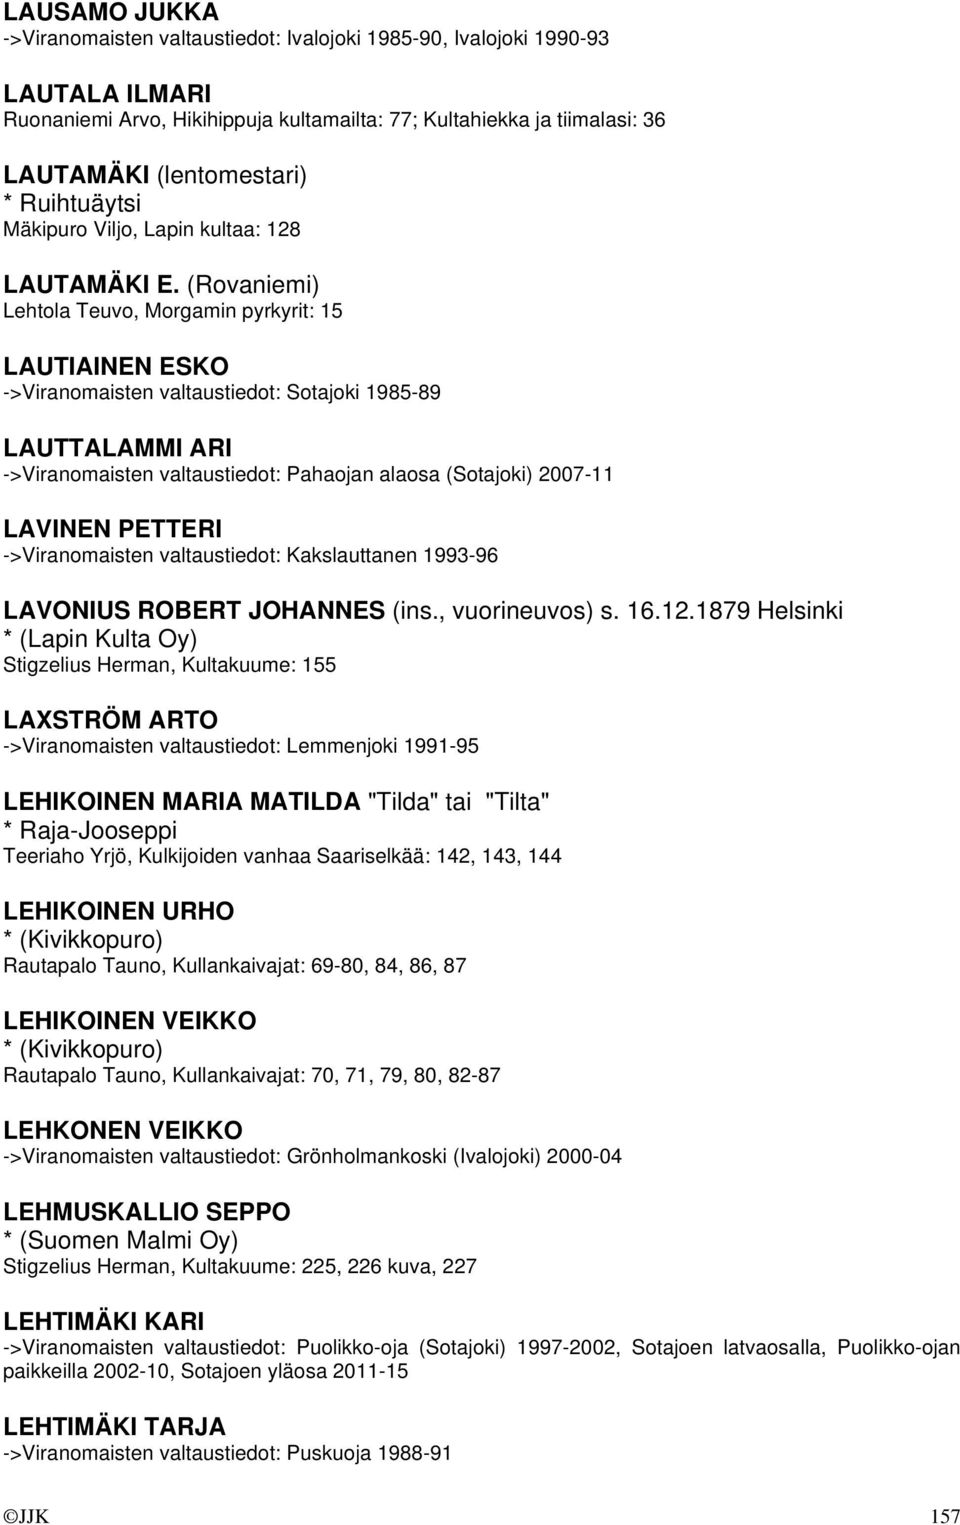 (Rovaniemi) Lehtola Teuvo, Morgamin pyrkyrit: 15 LAUTIAINEN ESKO ->Viranomaisten valtaustiedot: Sotajoki 1985-89 LAUTTALAMMI ARI ->Viranomaisten valtaustiedot: Pahaojan alaosa (Sotajoki) 2007-11